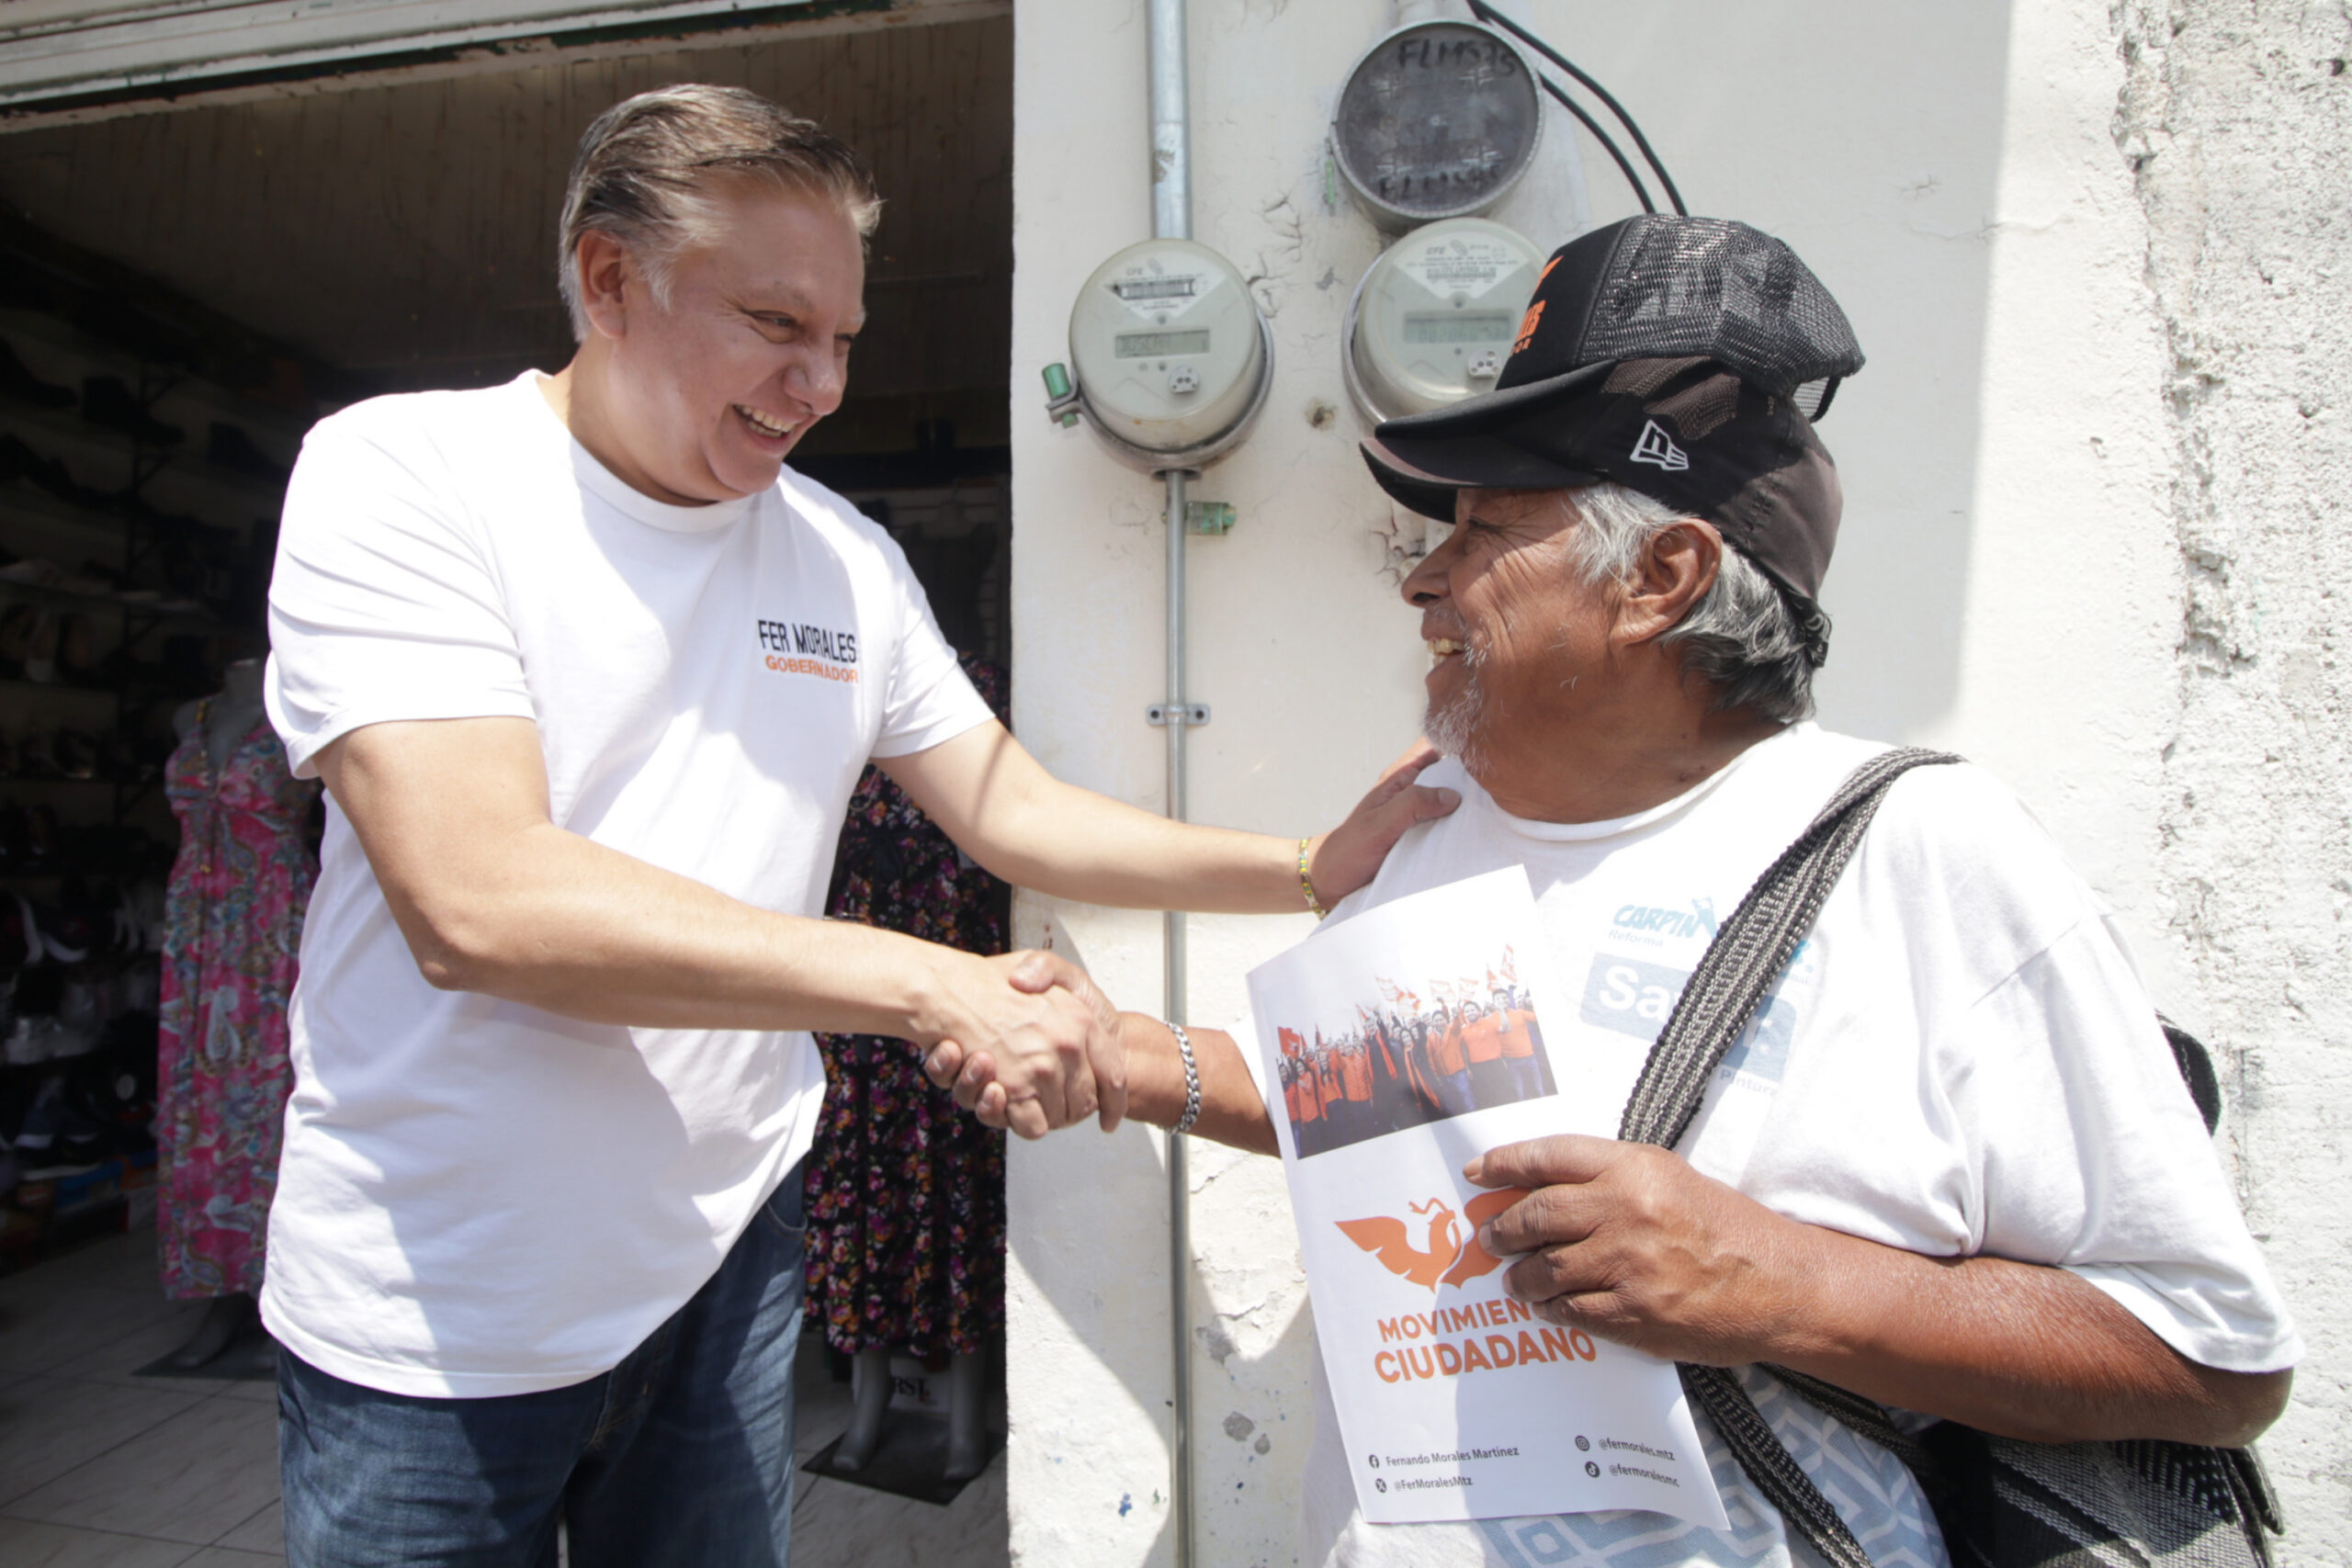 Fernando Morales promete aumento de seguridad en San Salvador Chachapa